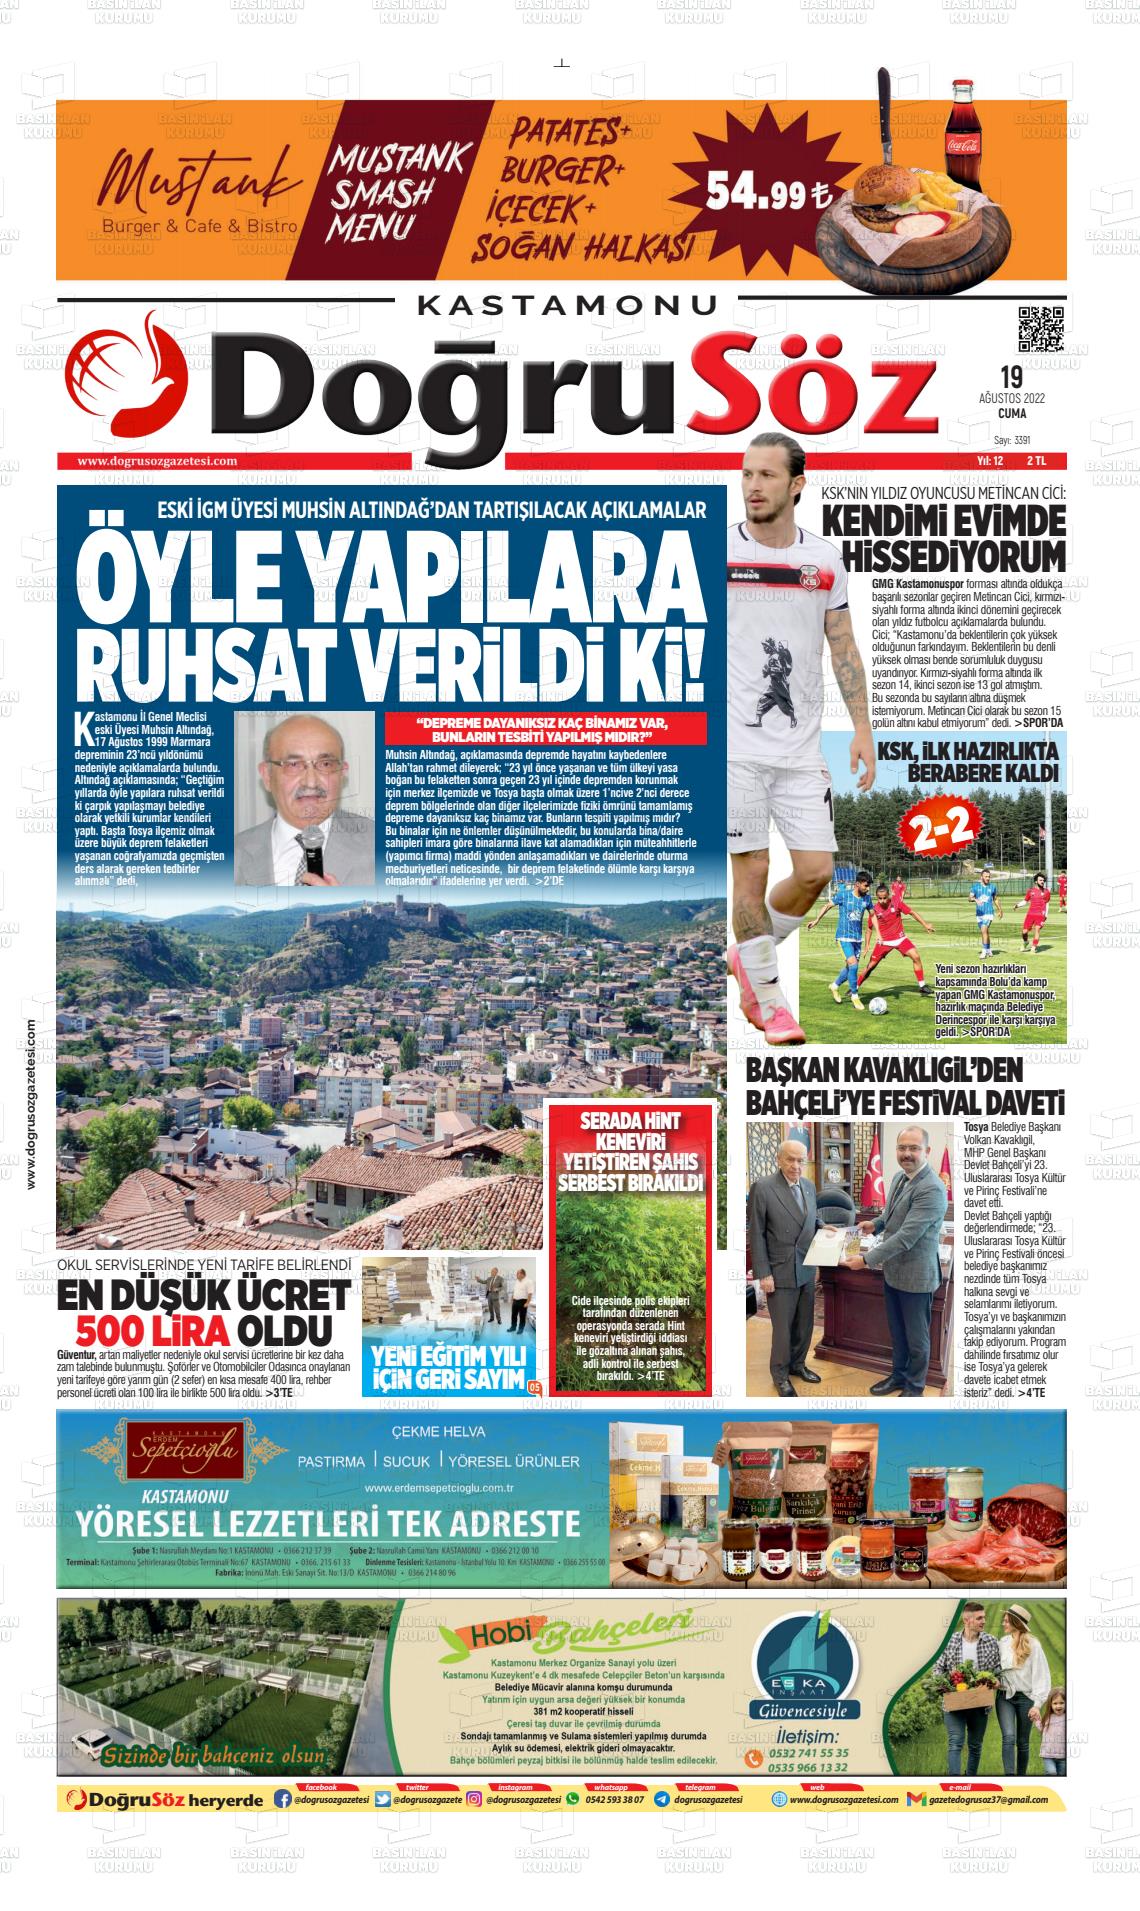 19 Ağustos 2022 Kastamonu Doğrusöz Gazete Manşeti